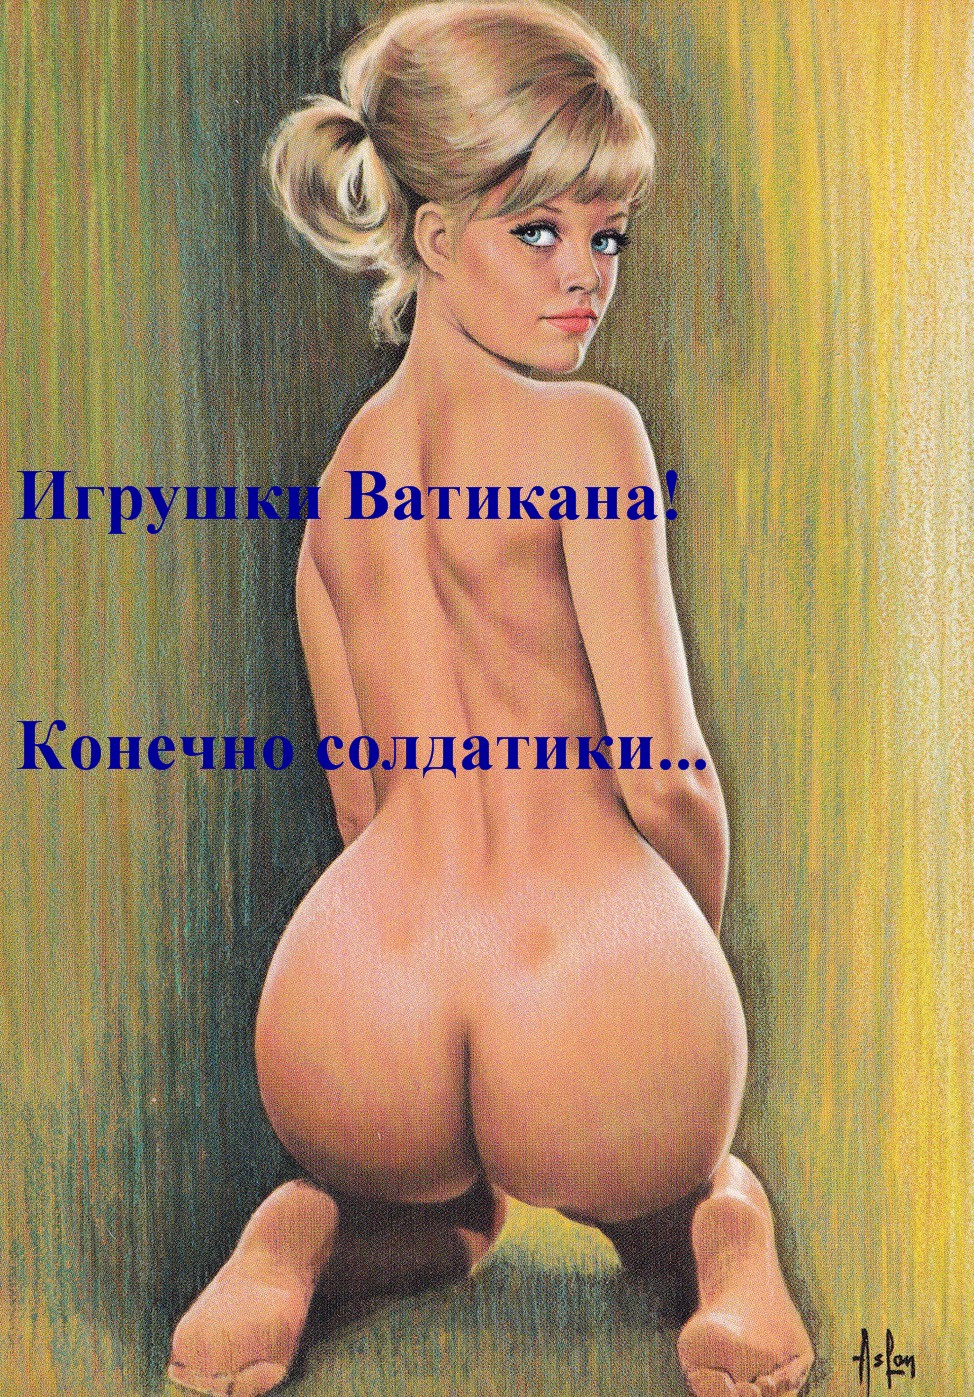 http://i60.fastpic.ru/big/2015/0424/a9/4a5e35c4031c10a8df11e5312d0bb8a9.jpg